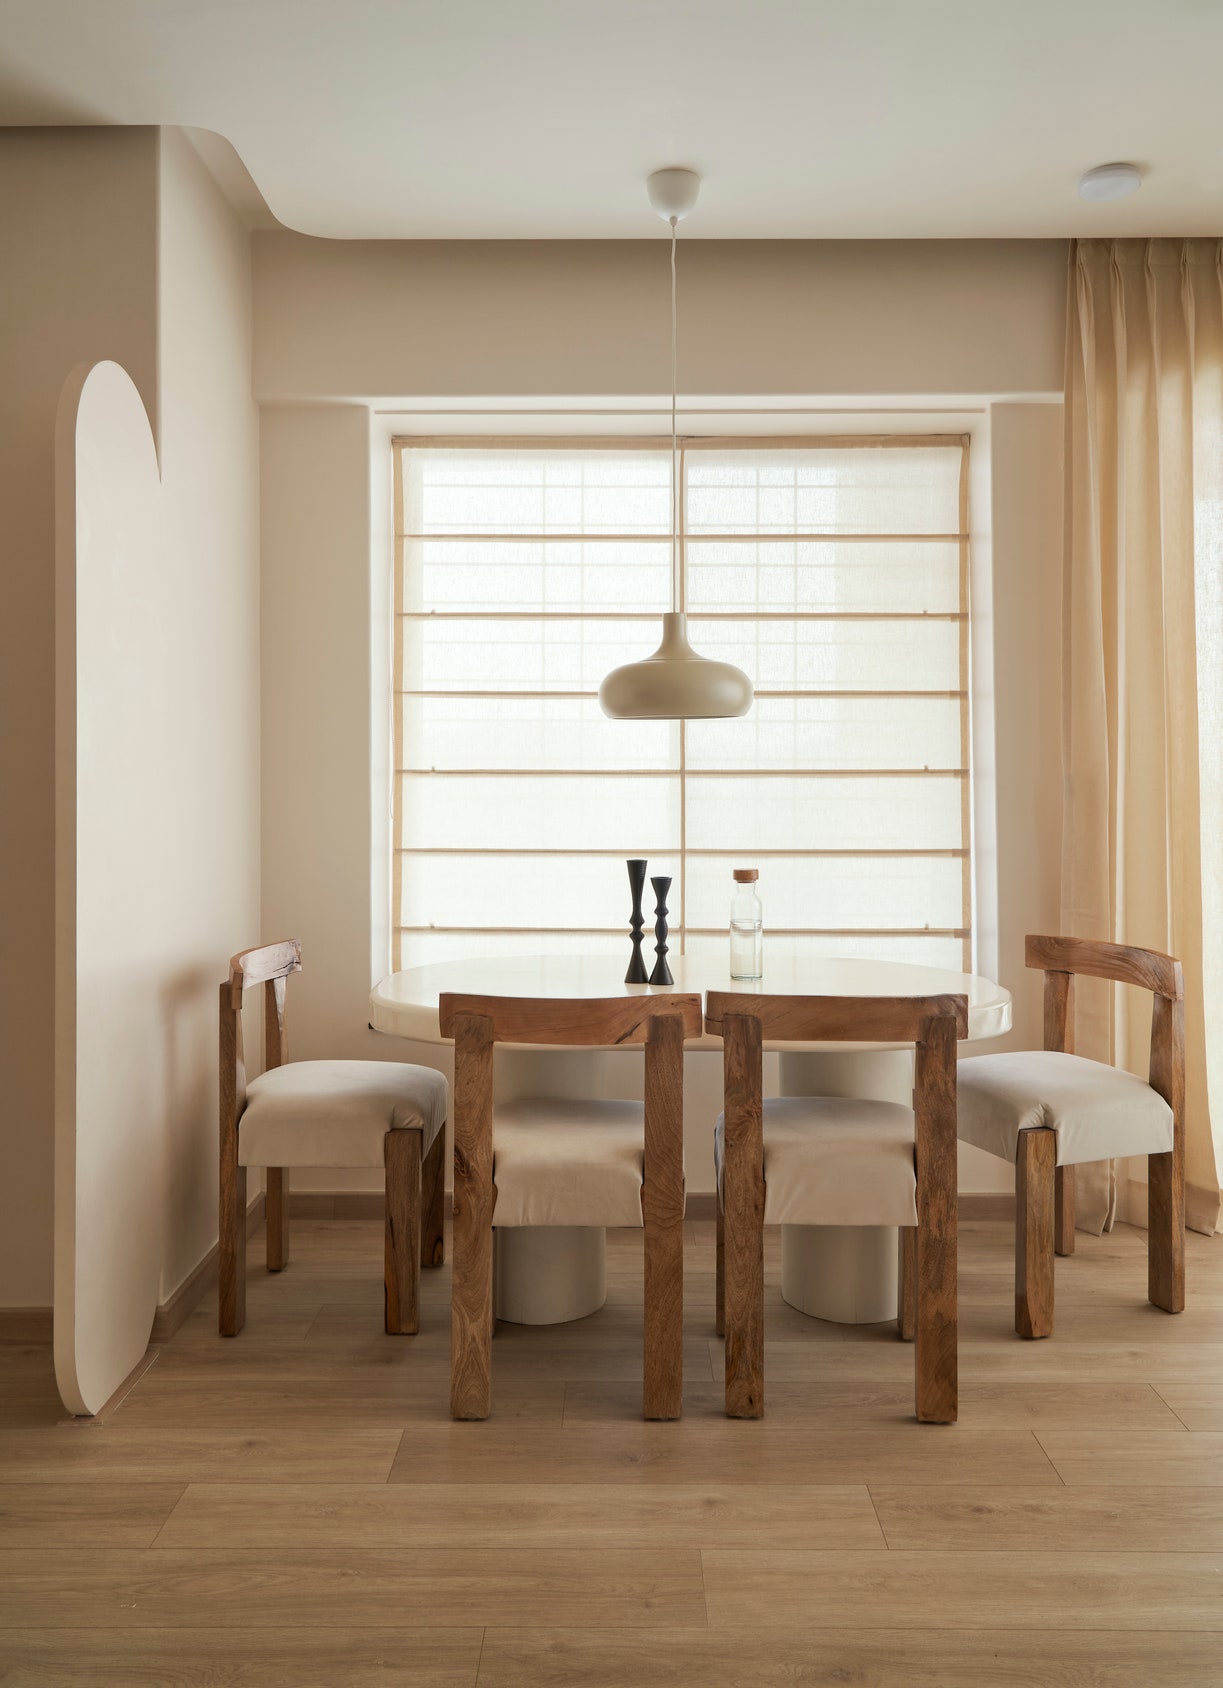 die lösung? minimalismus! von einer 68-quadratmeter-wohnung zum weitläufigen familien-zuhause